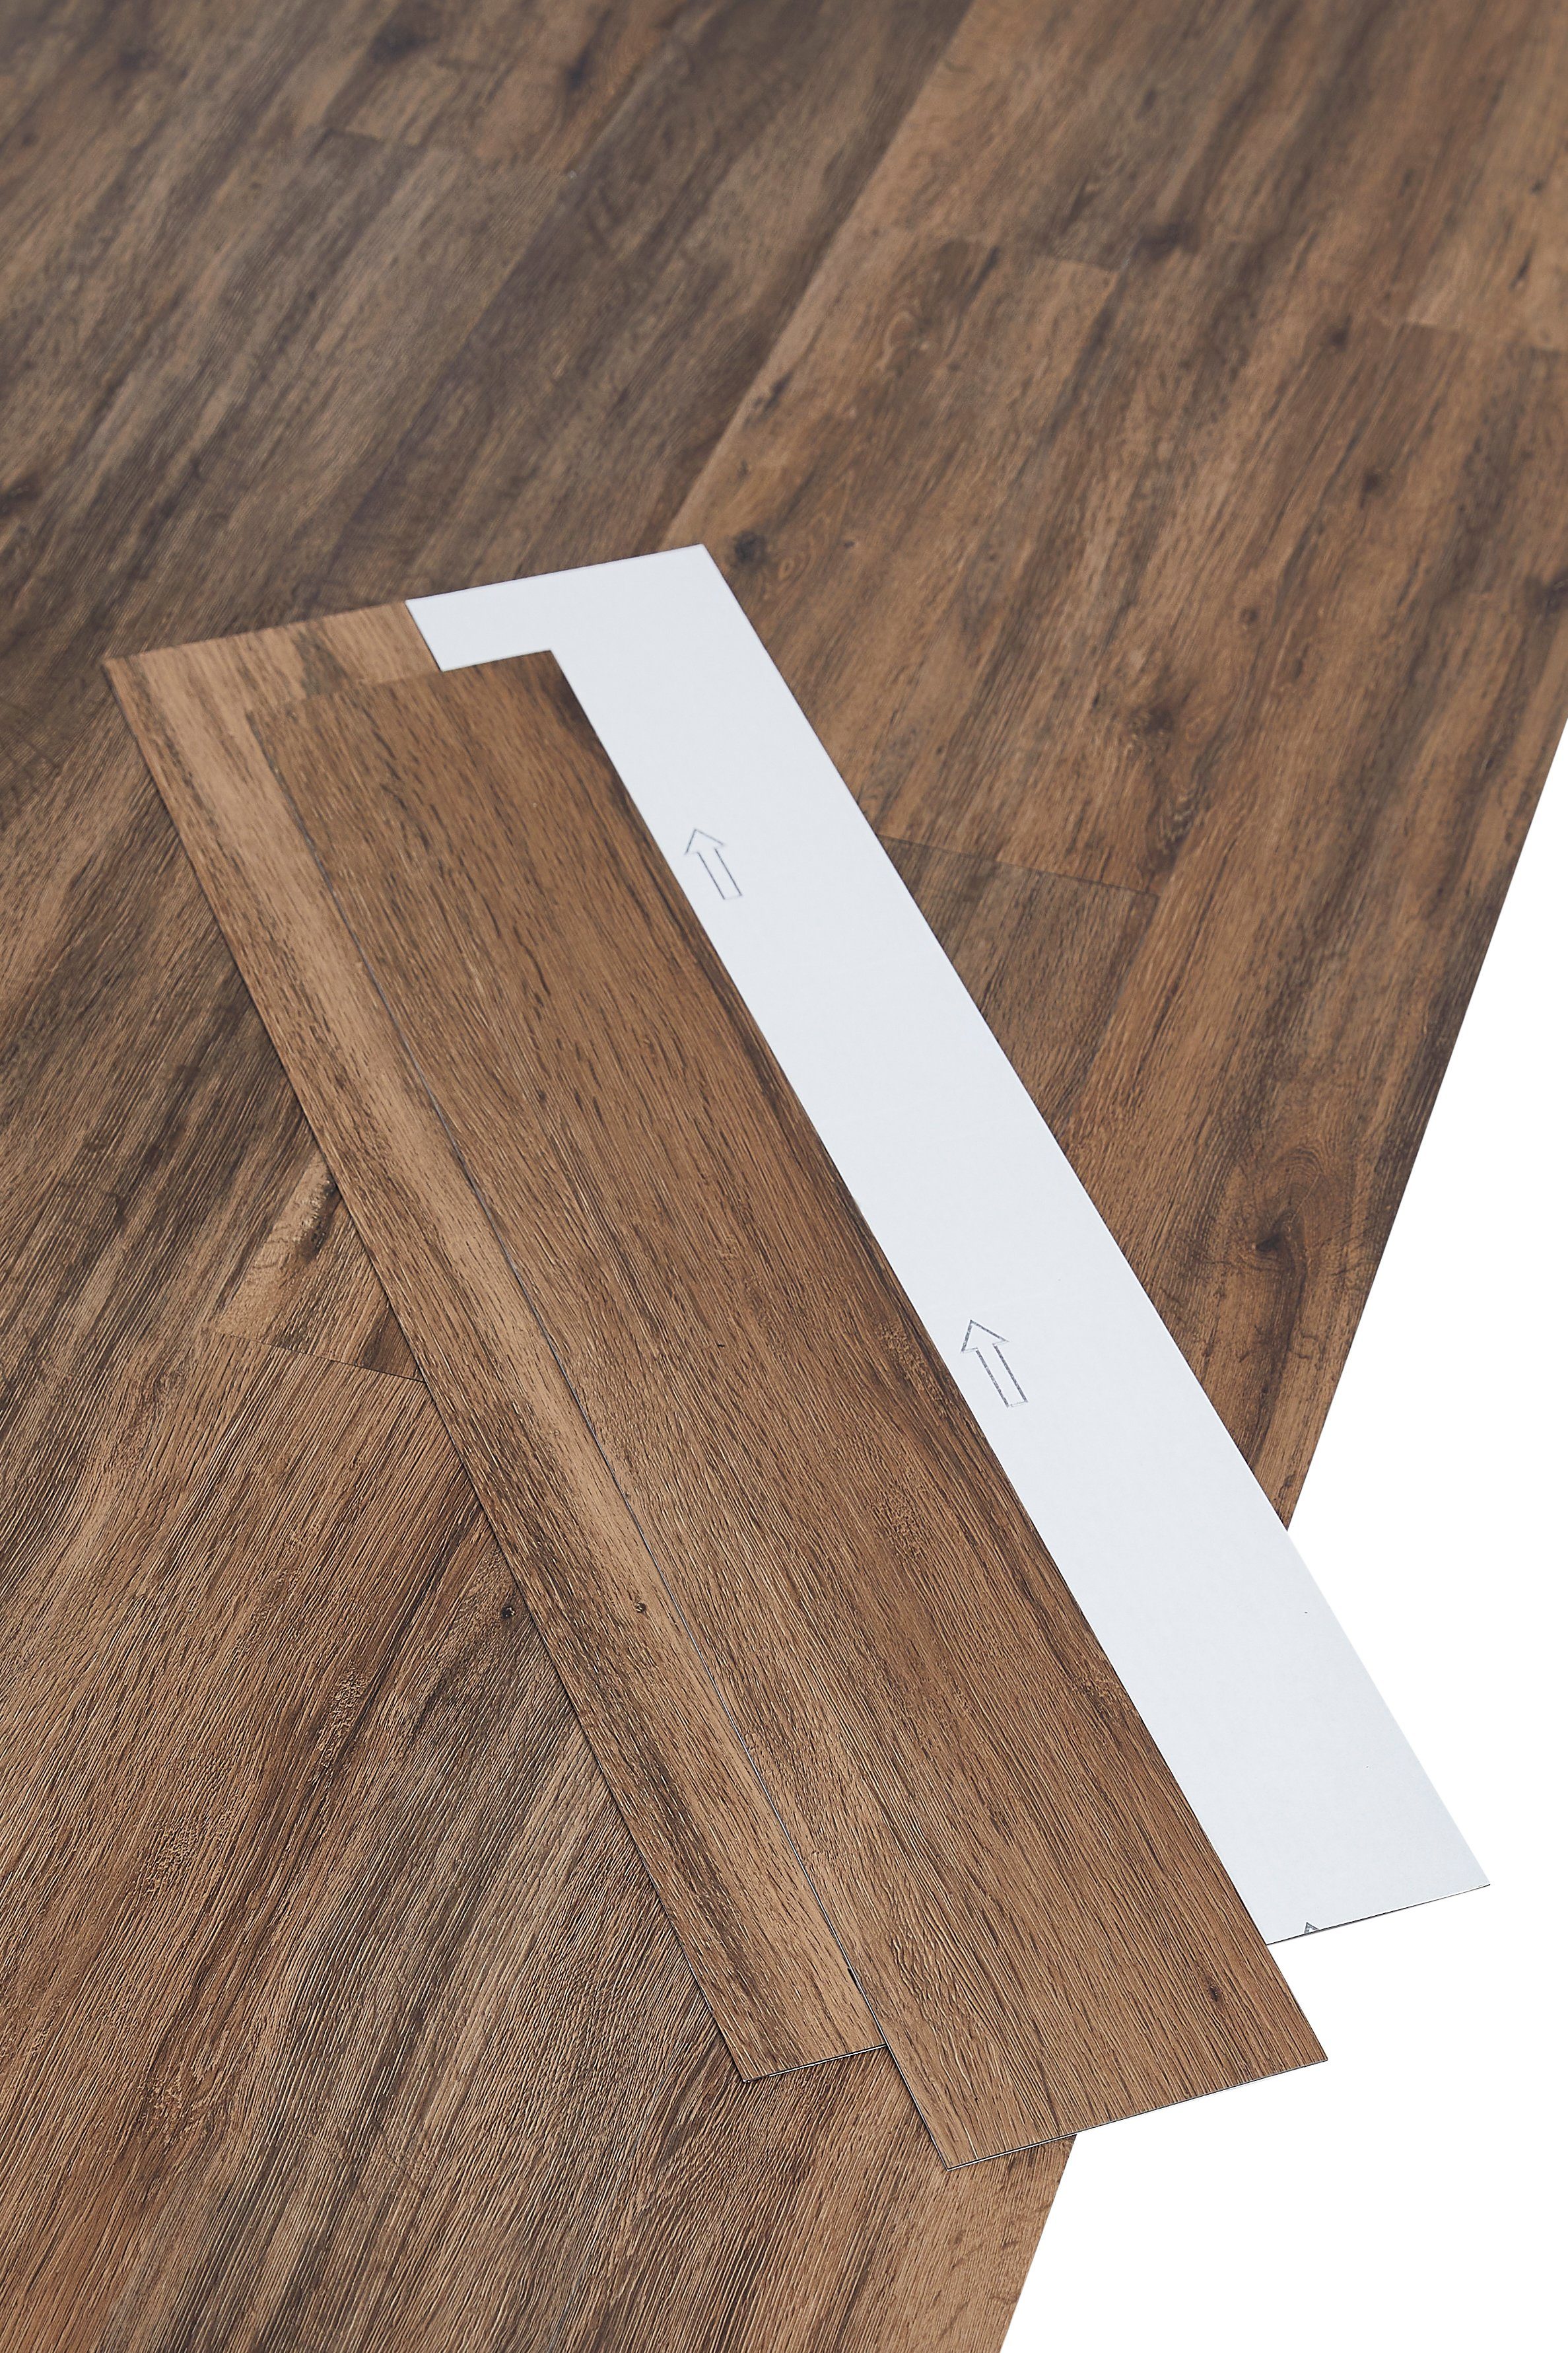 misento Designboden selbstklebende Vinyl-Planken, Holzoptik, Eicheoptik,  Vinylplanken, zuschneidbar, 4,46 m², 32 Planken